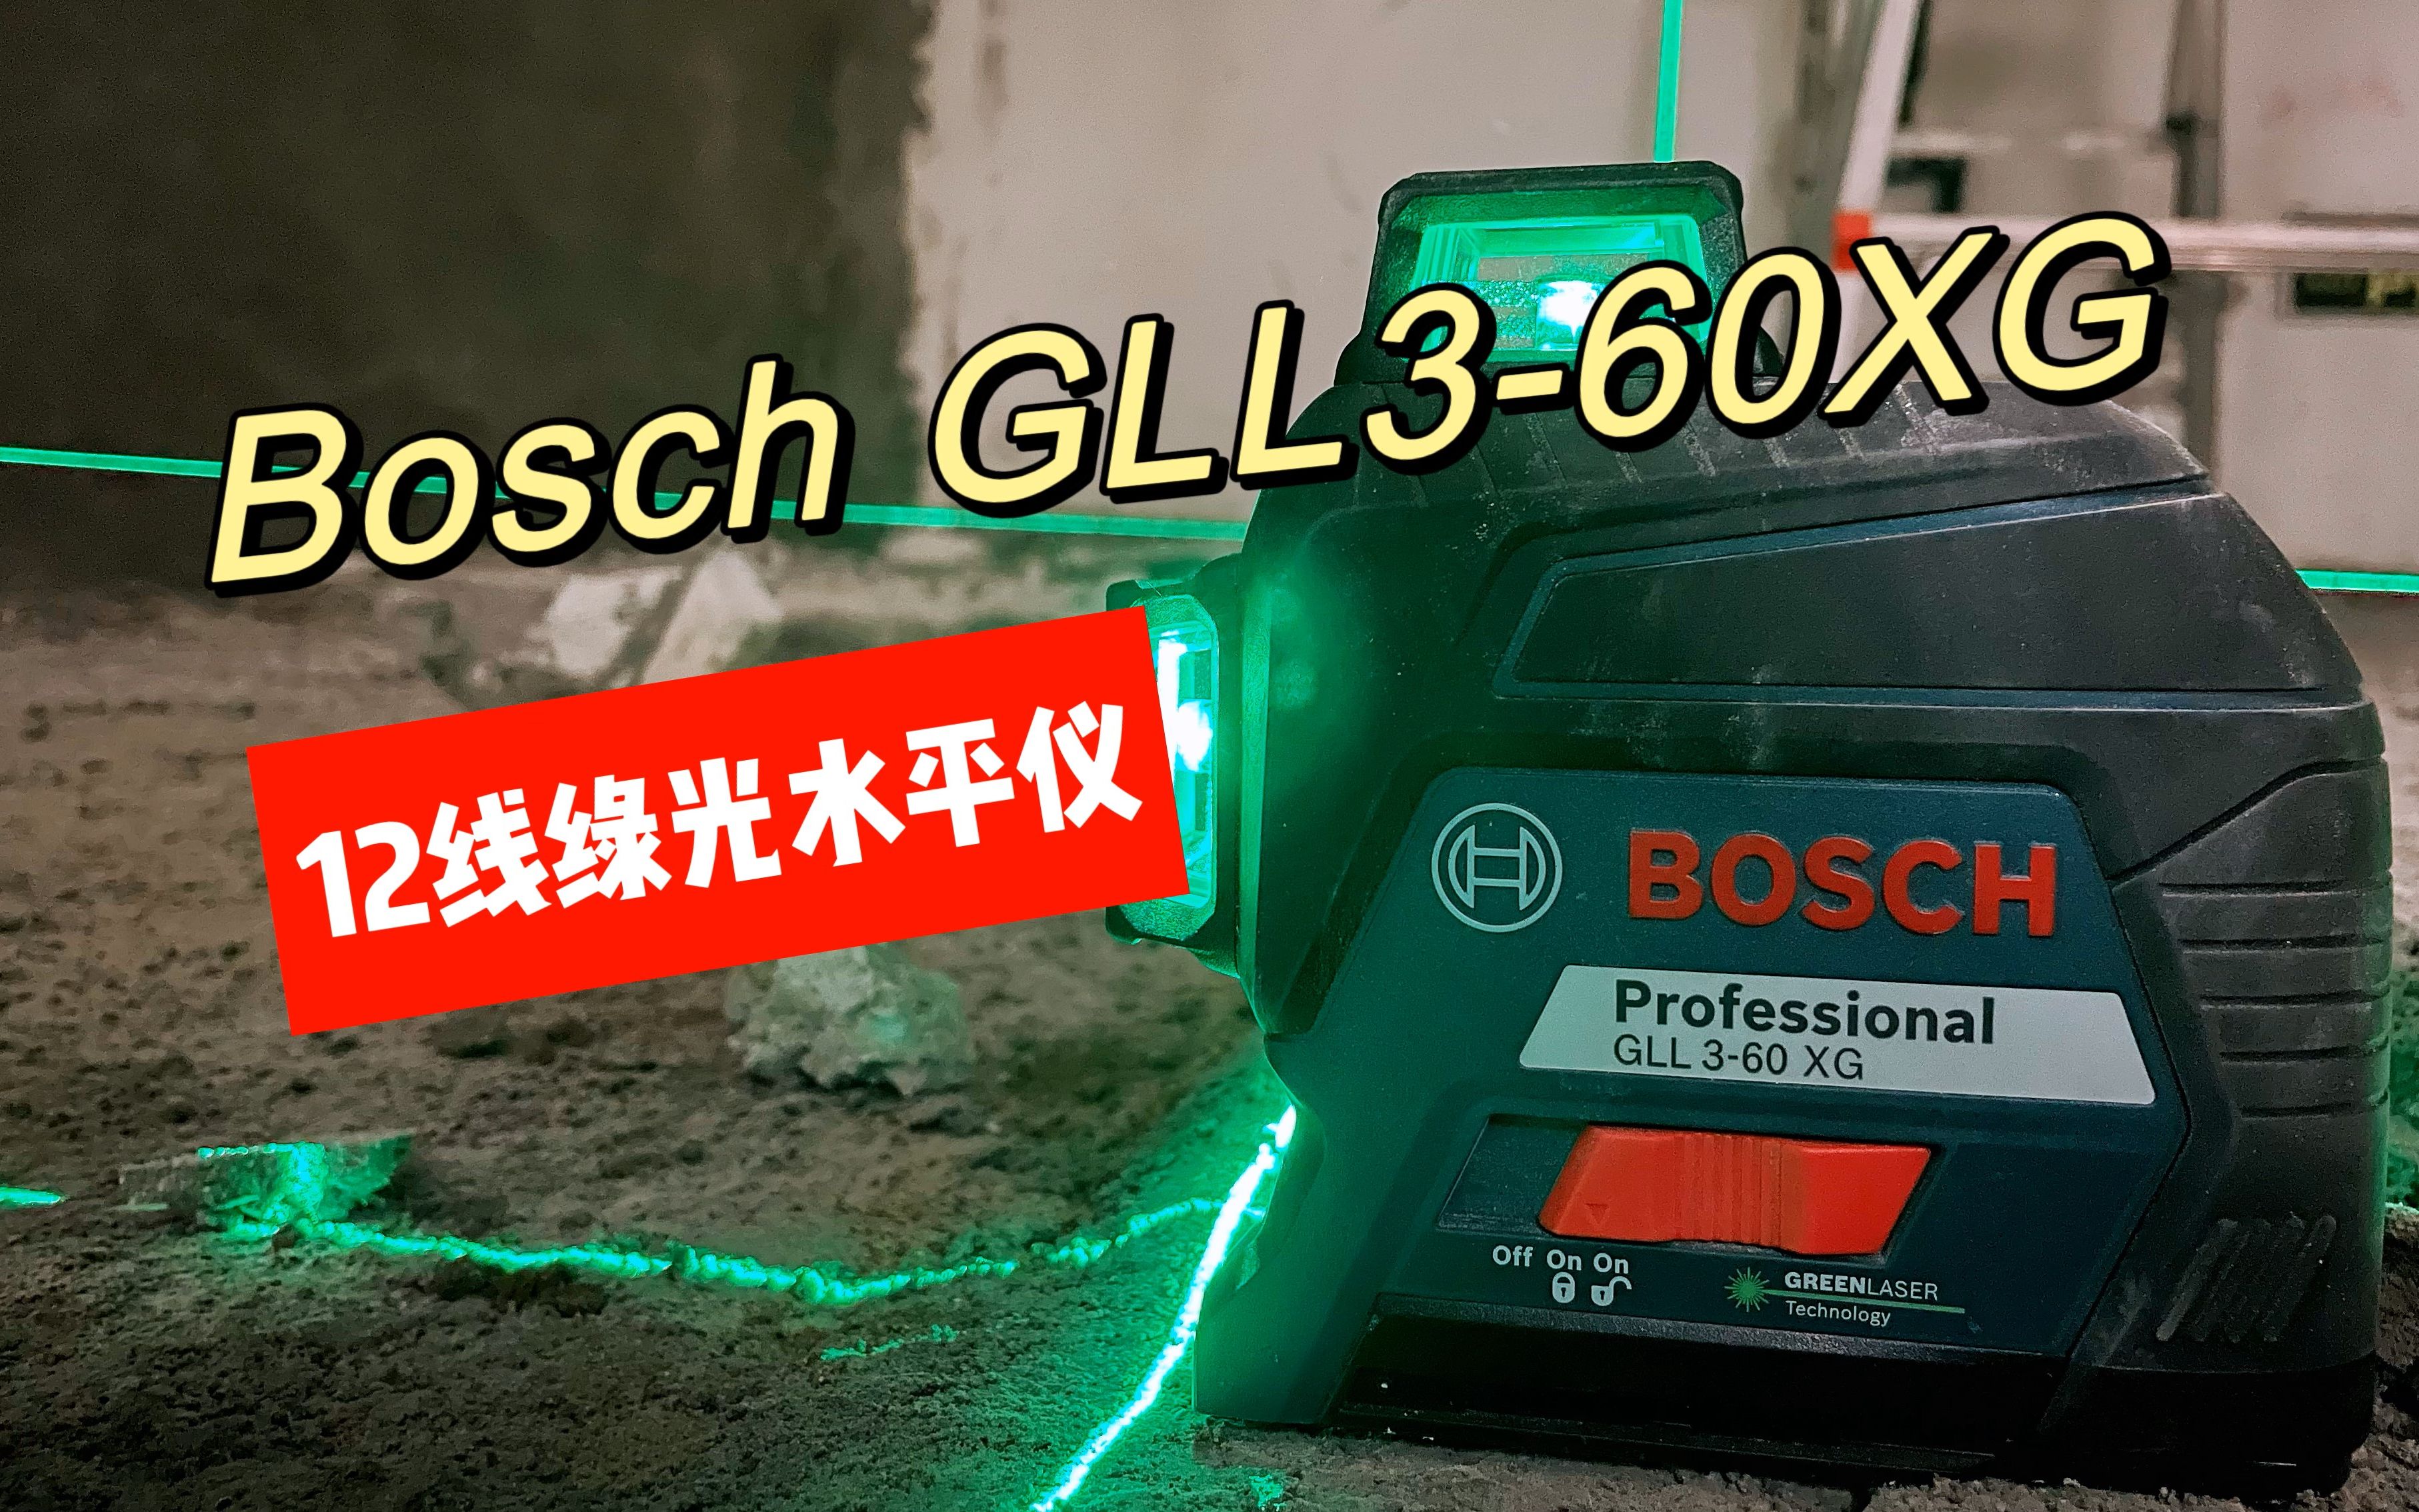 哎呦喂，旧的不坏，新的不买，博世GLL3-60 XG绿光12线水平仪